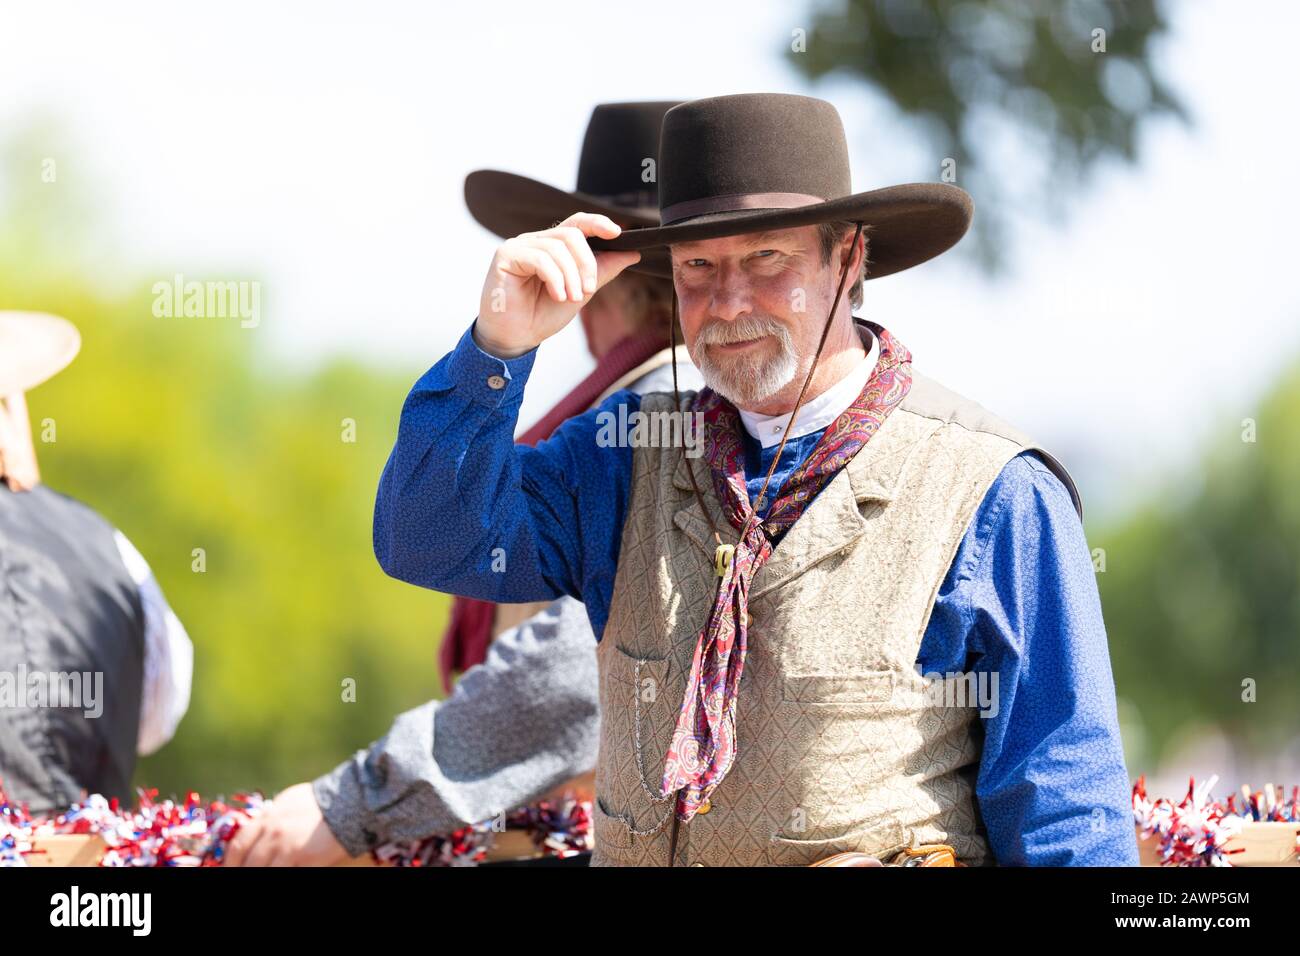 Arlington, Texas, USA - 4. Juli 2019: Arlington, 4. Juli Parade, Mann mit traditioneller Kleidung aus der Alten Westzeit Stockfoto